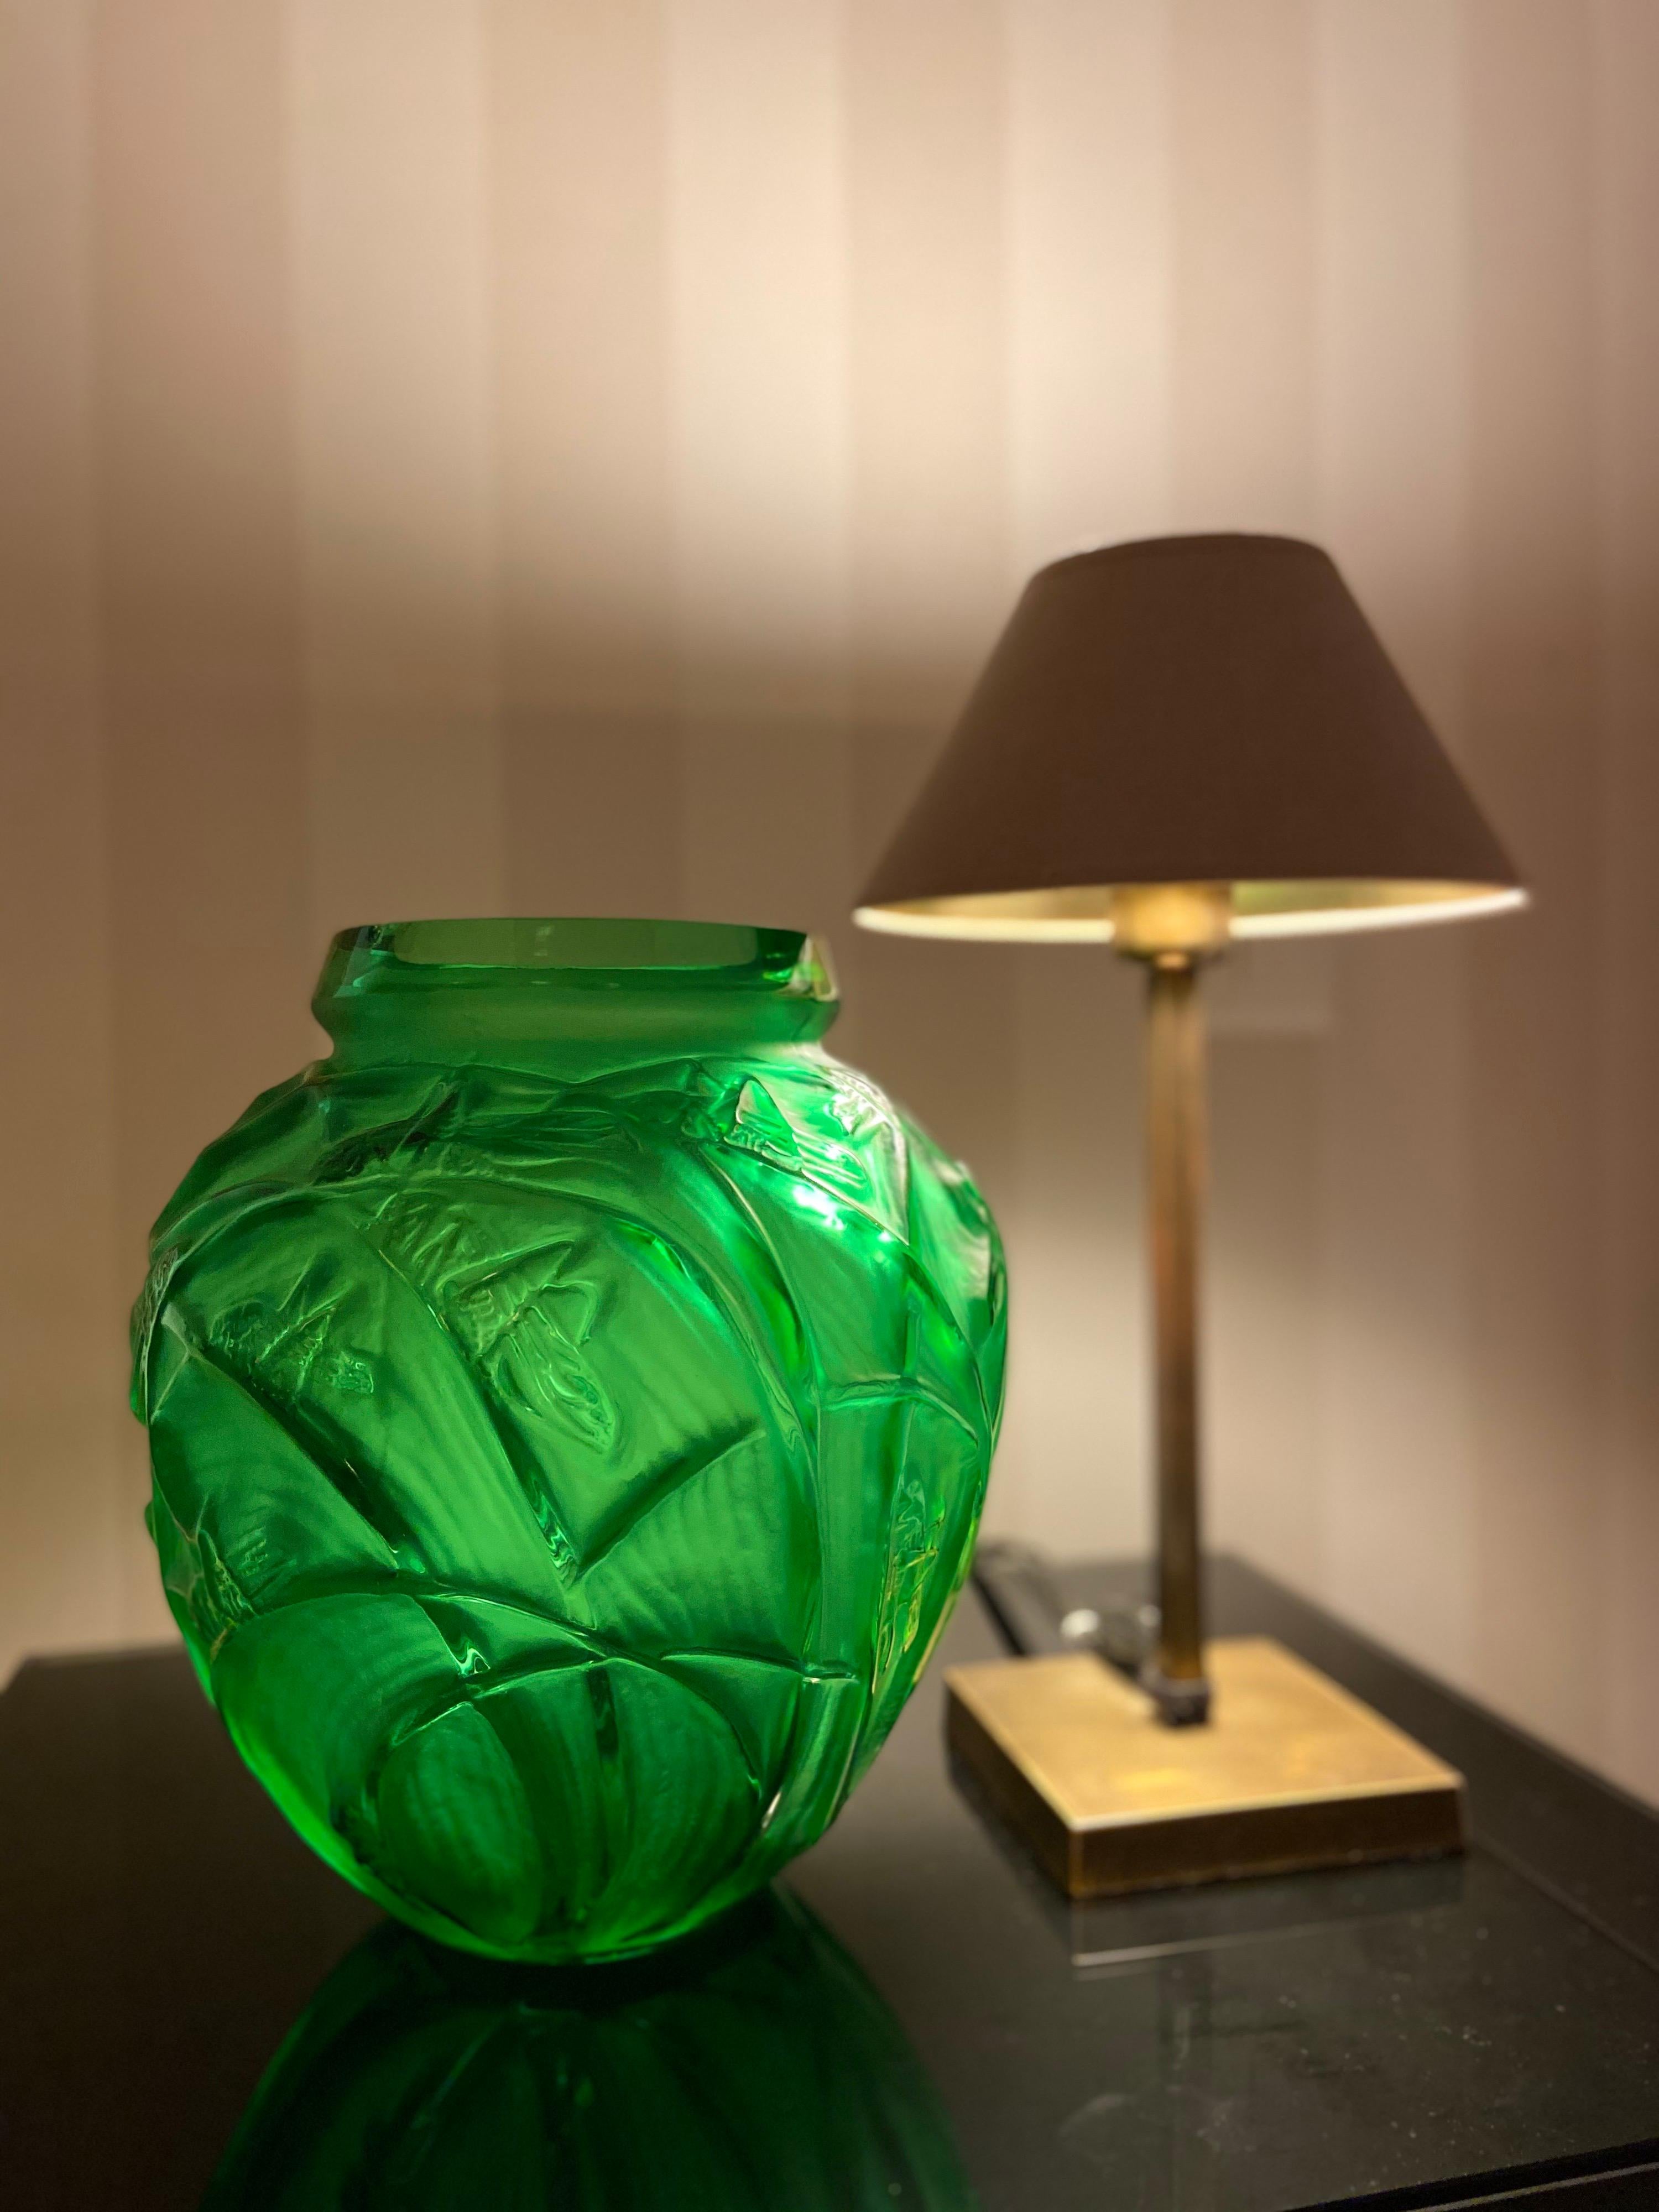 Crystal Large Vase “Sauterelles” by René Lalique, France, 1921, Certificate